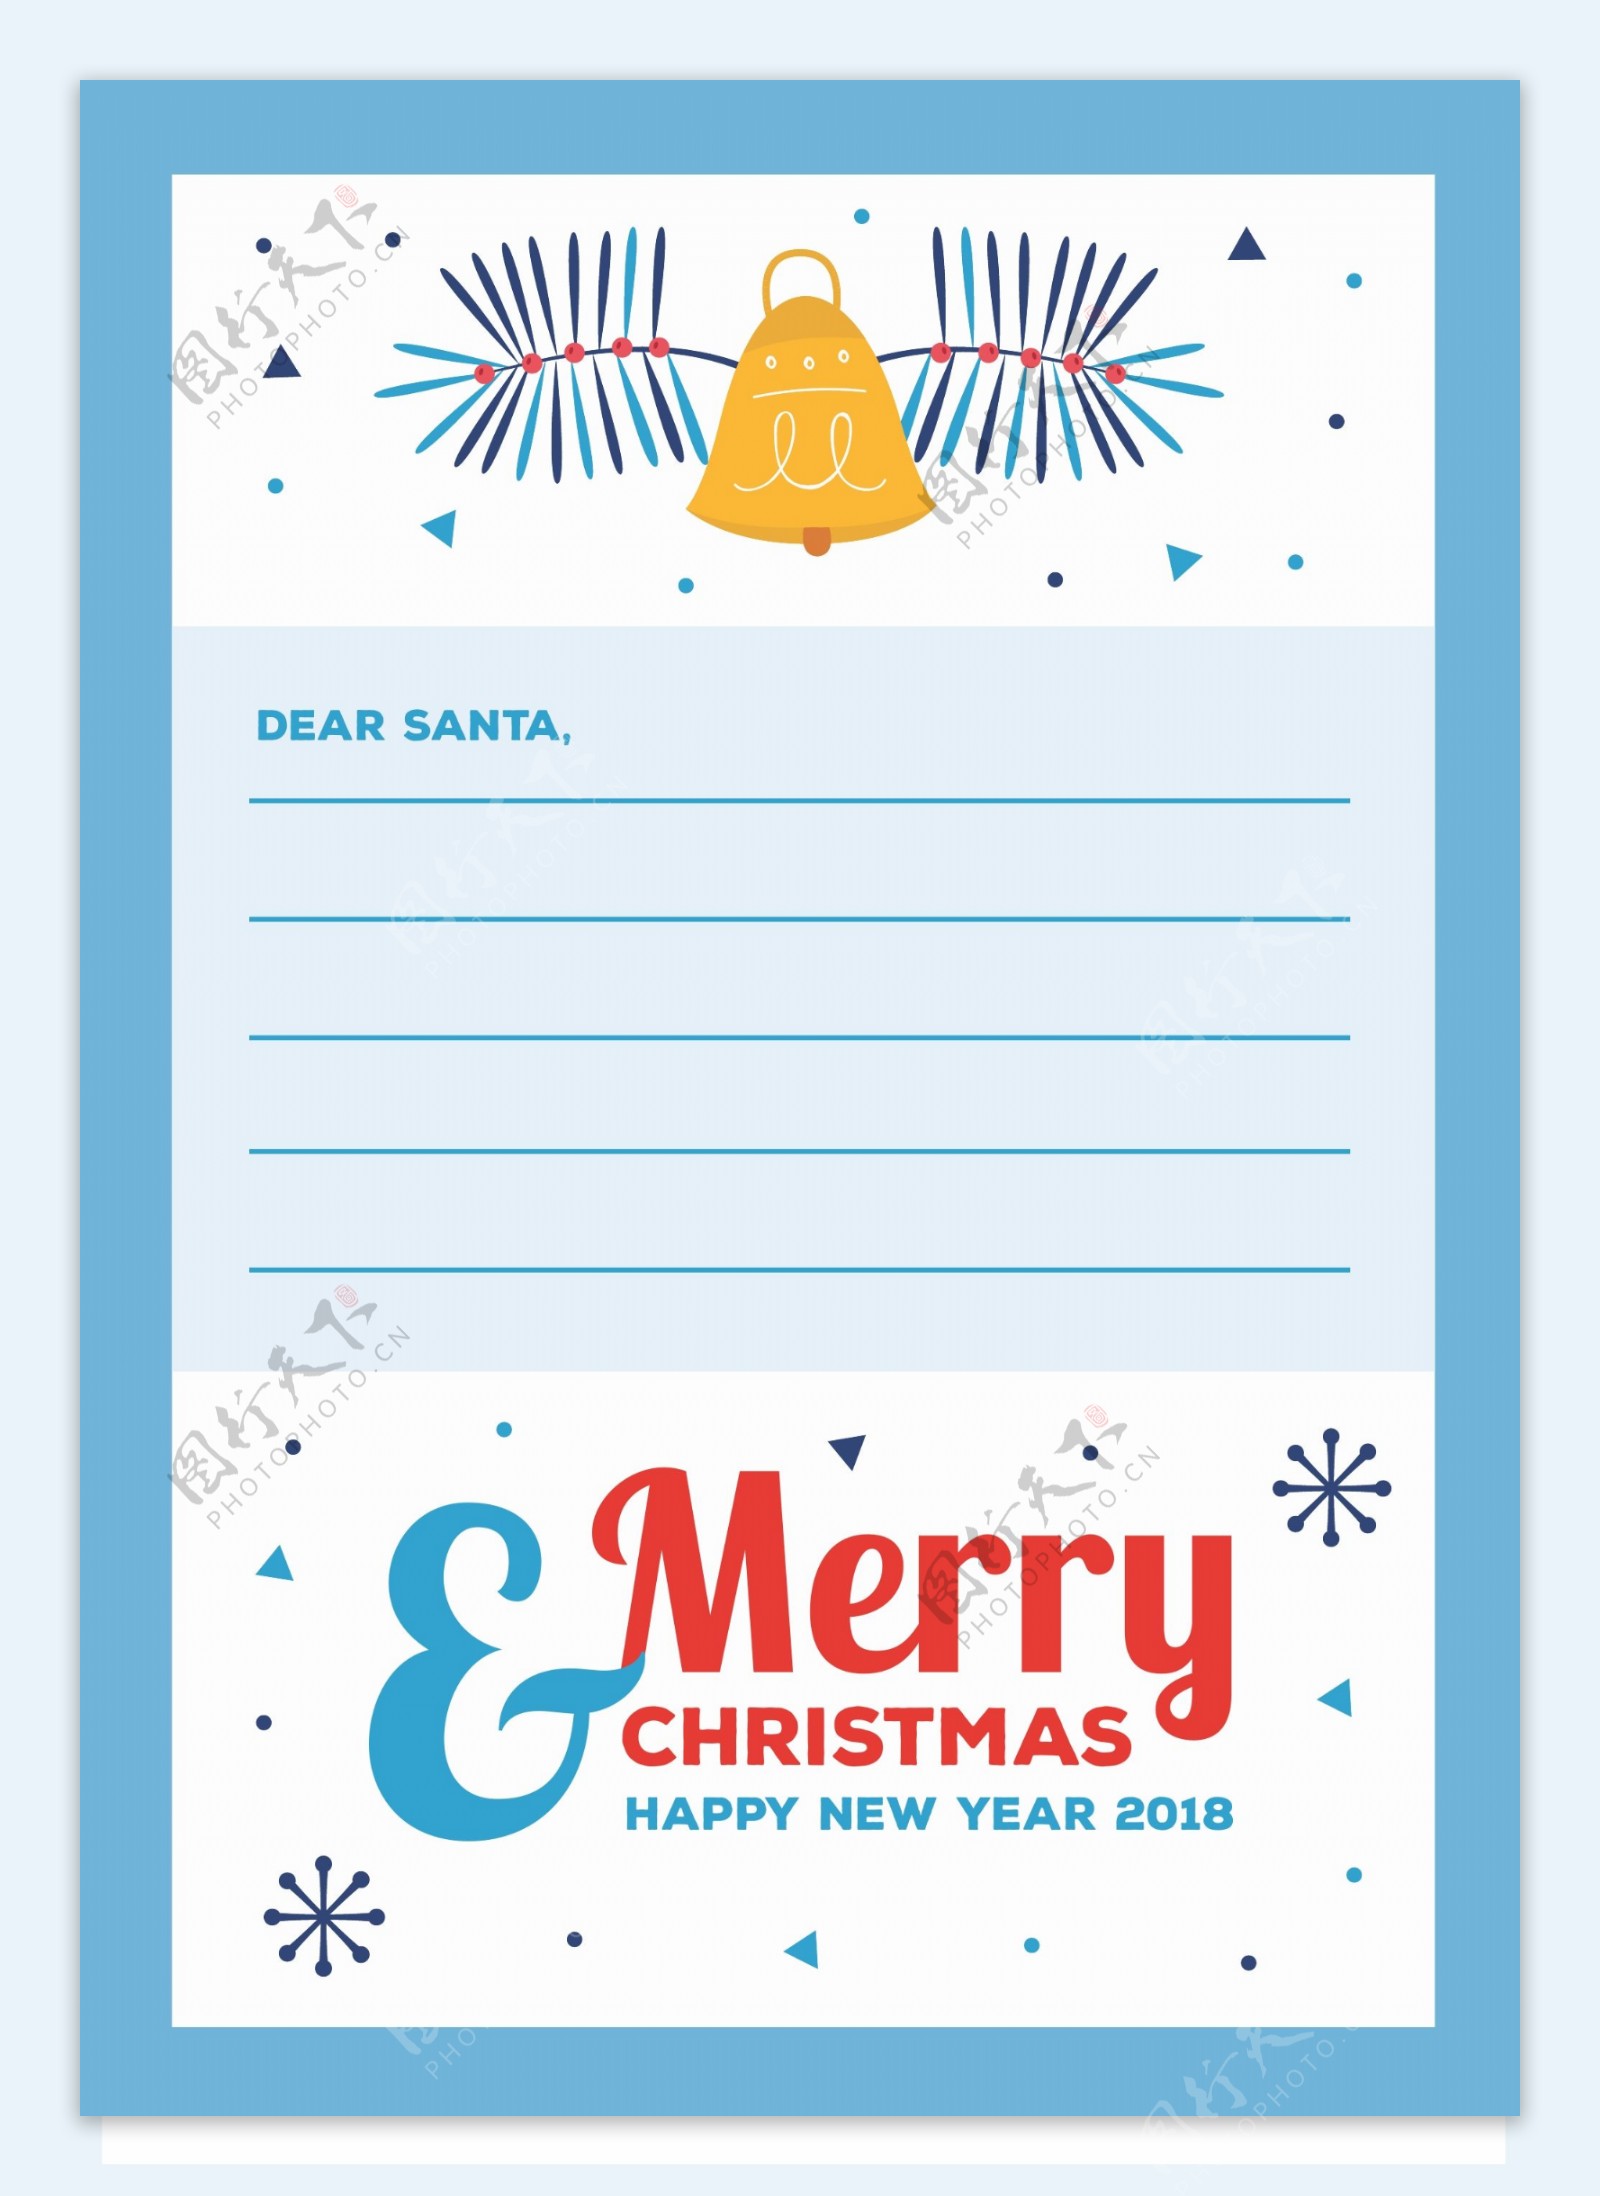 可爱的圣诞信件模板和信封